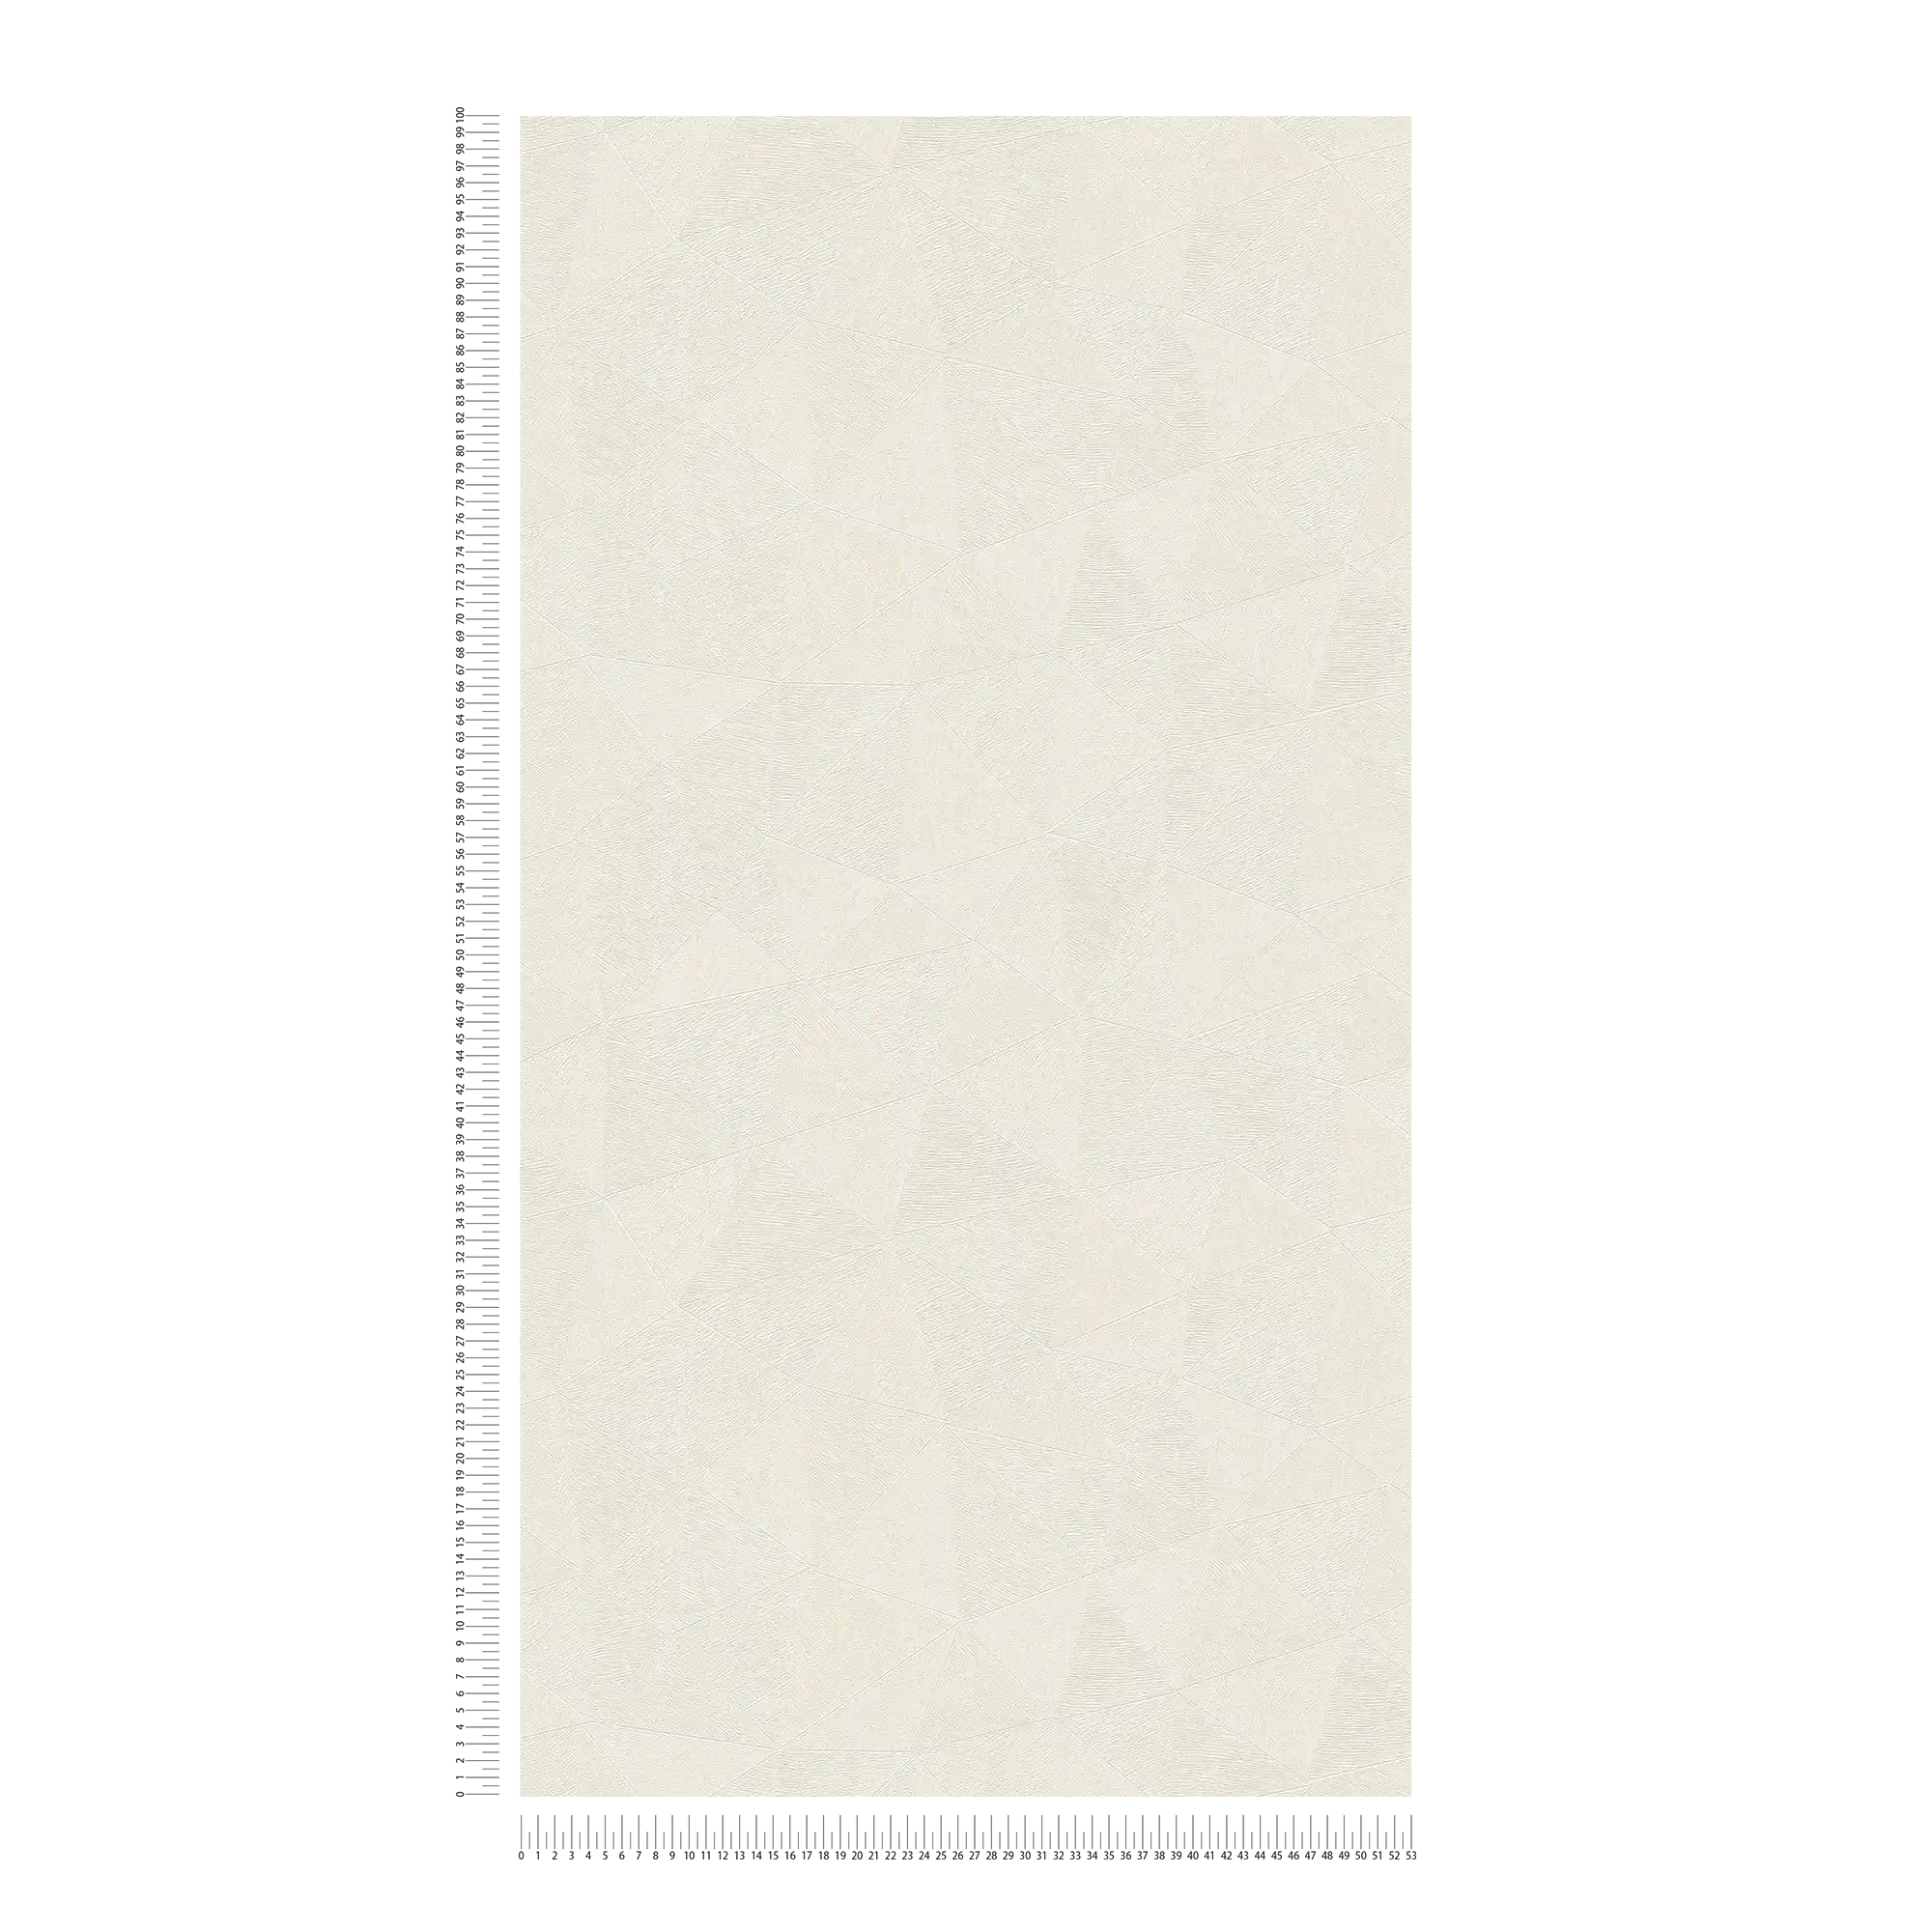             Grafische Vliestapete mit leichtem Muster – Weiß
        